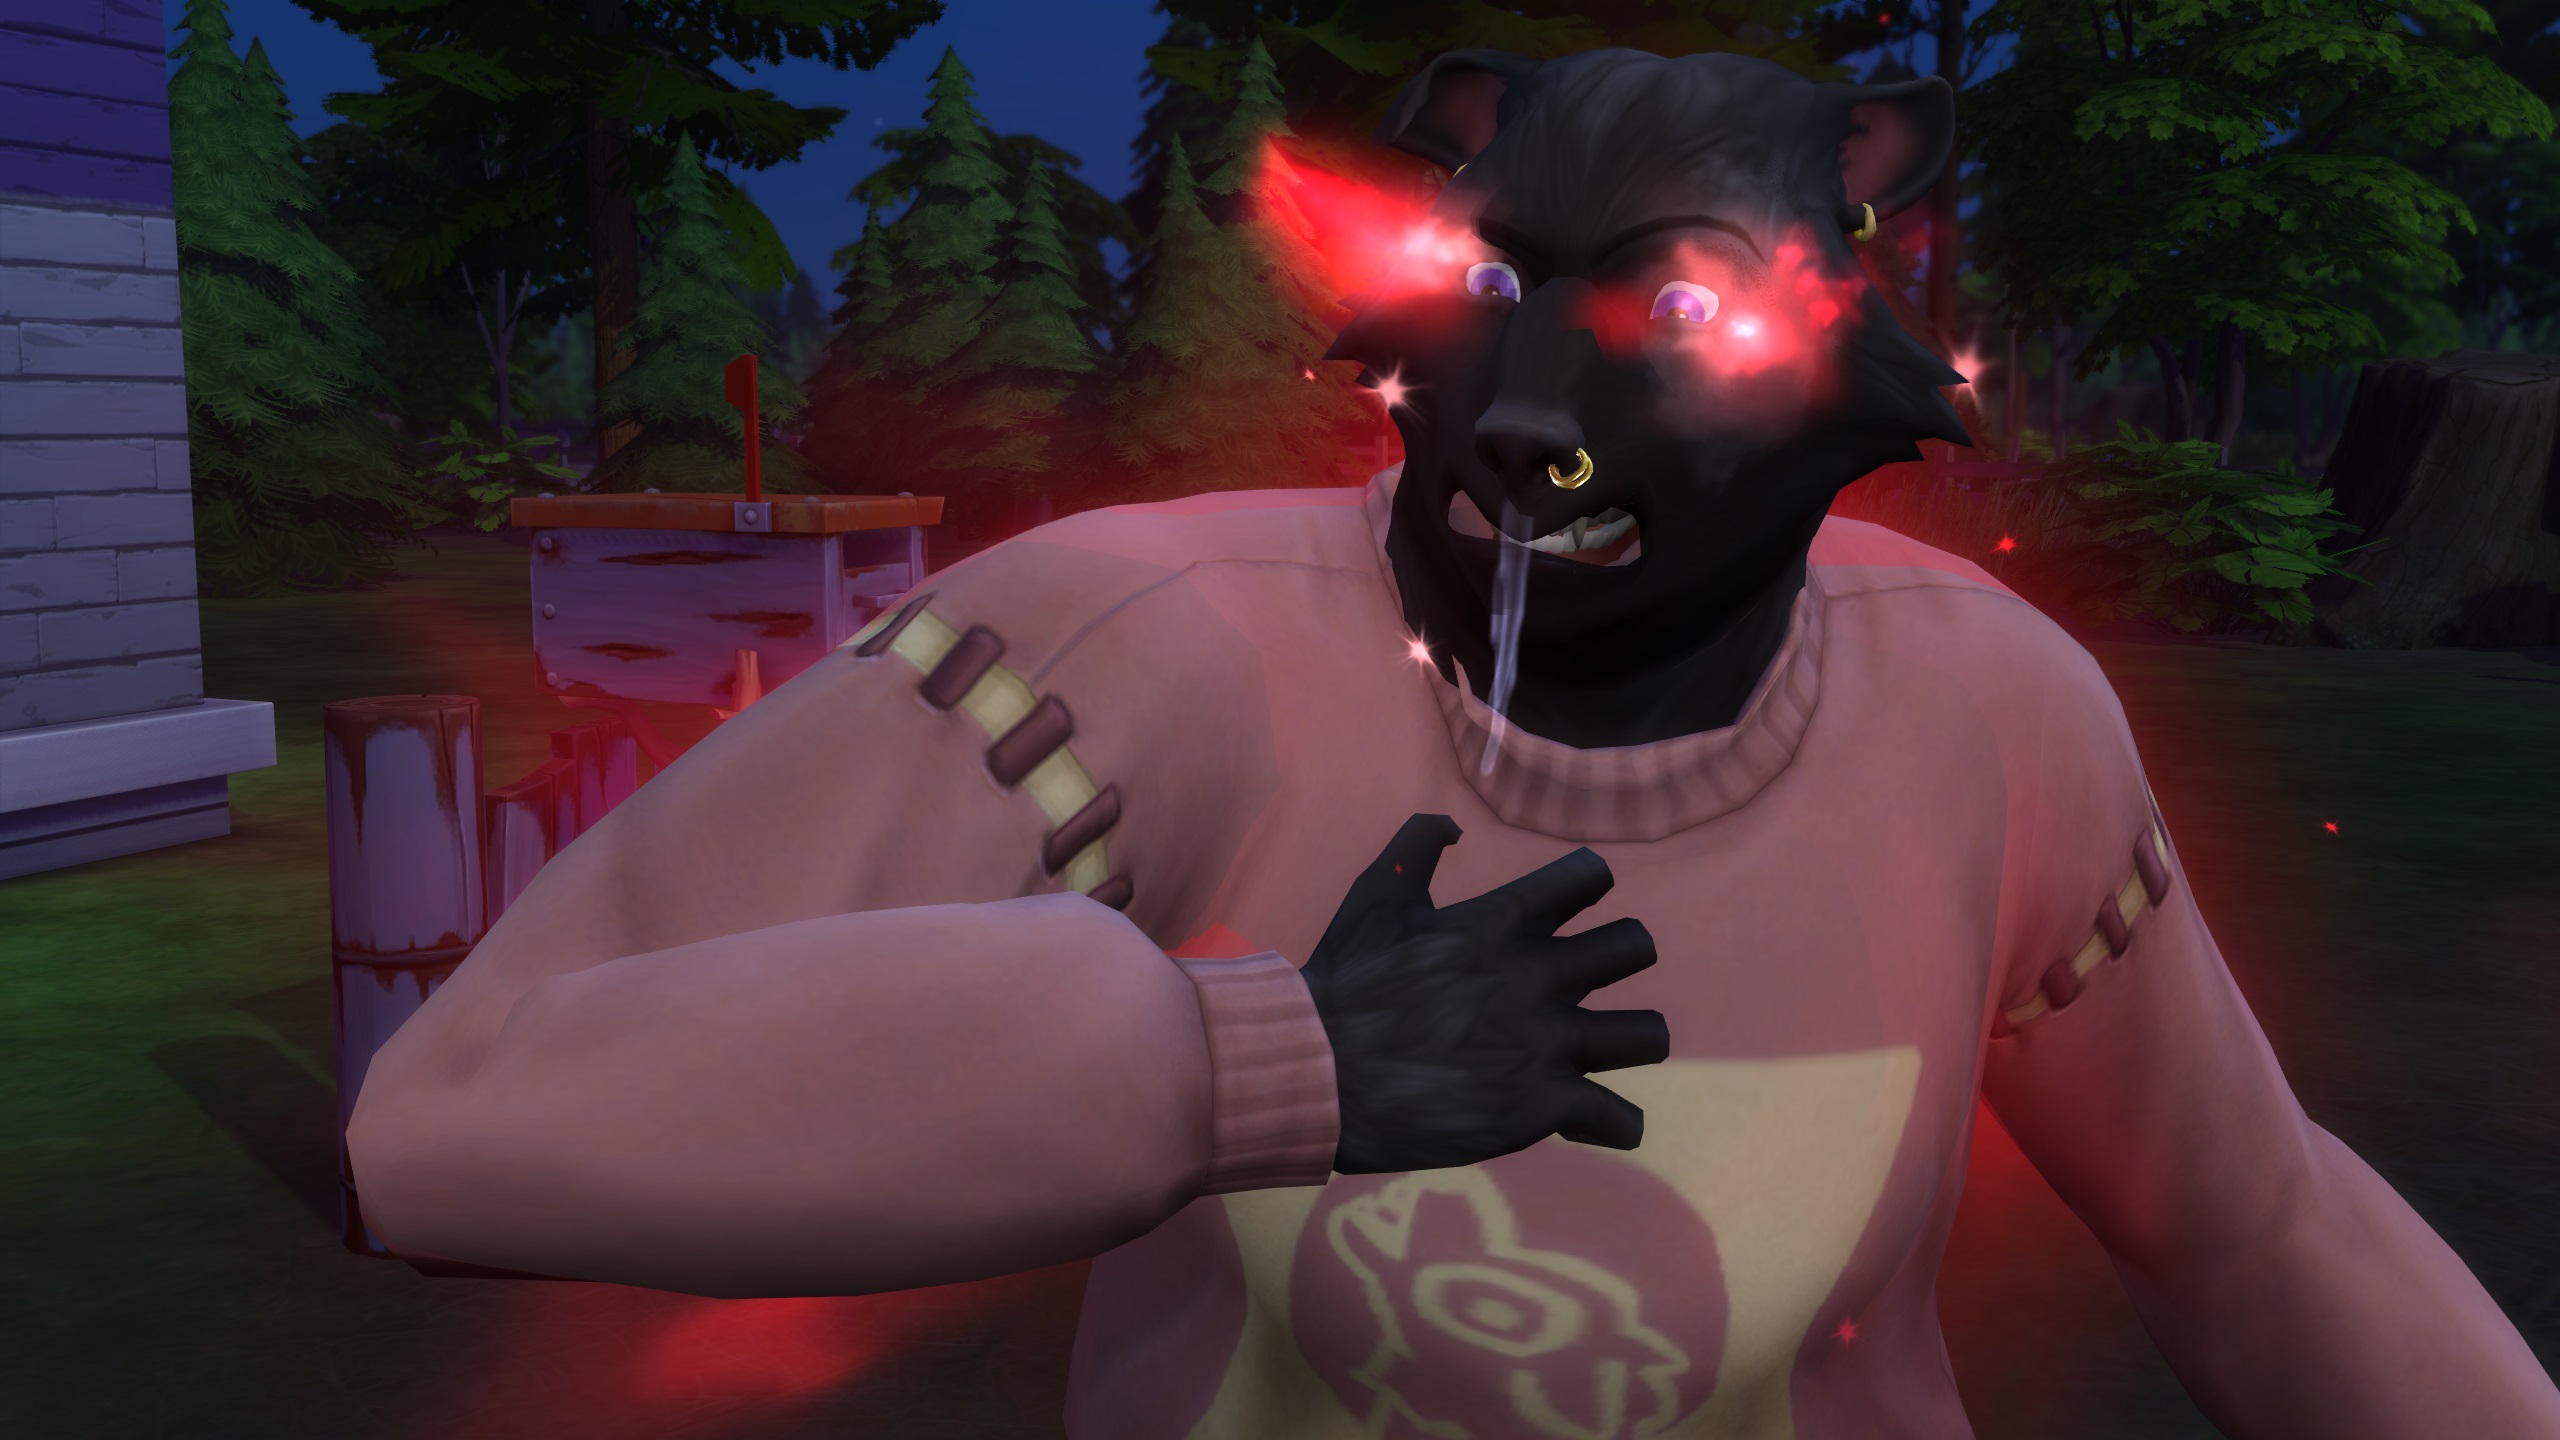 The Sims 4 Werewolves — у сима-оборотня с черным мехом злые светящиеся красные глаза, полные ярости и слюни, в розовом свитере.